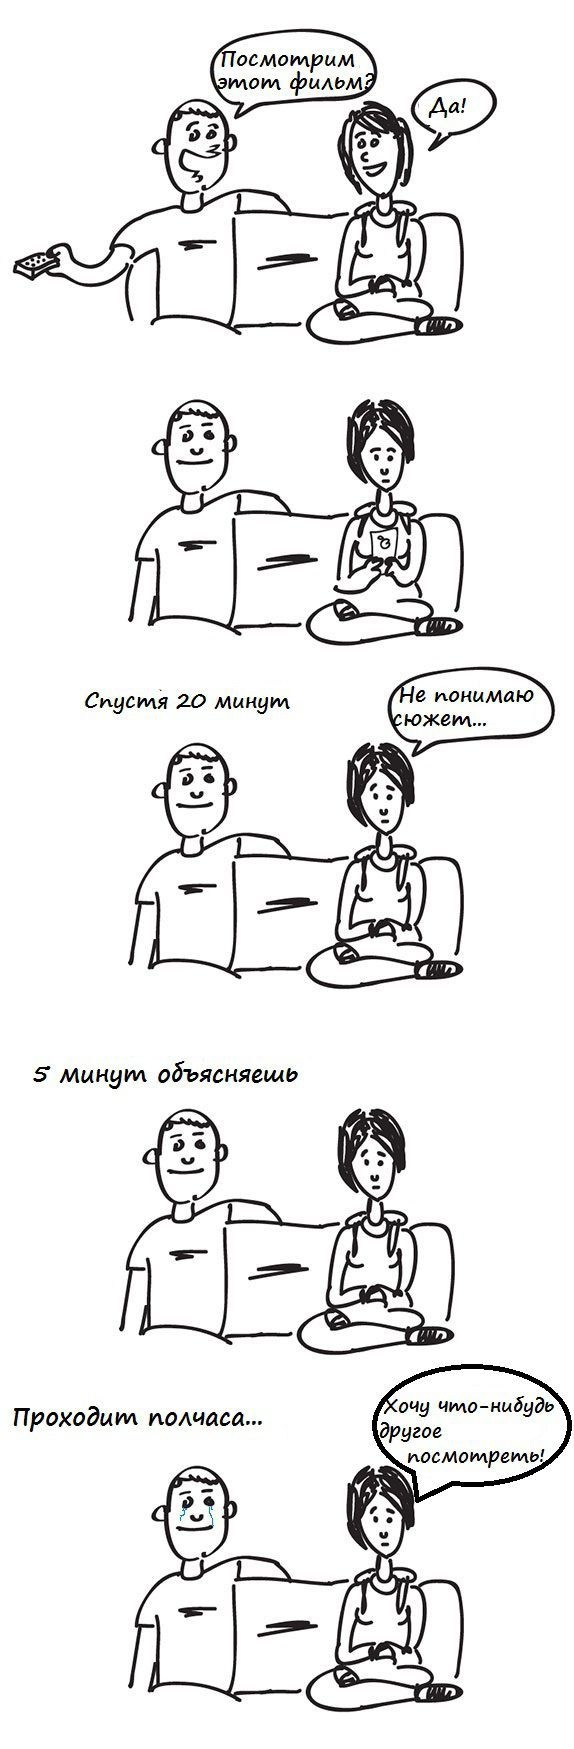 Смешные комиксы (20 картинок) 11.06.2014